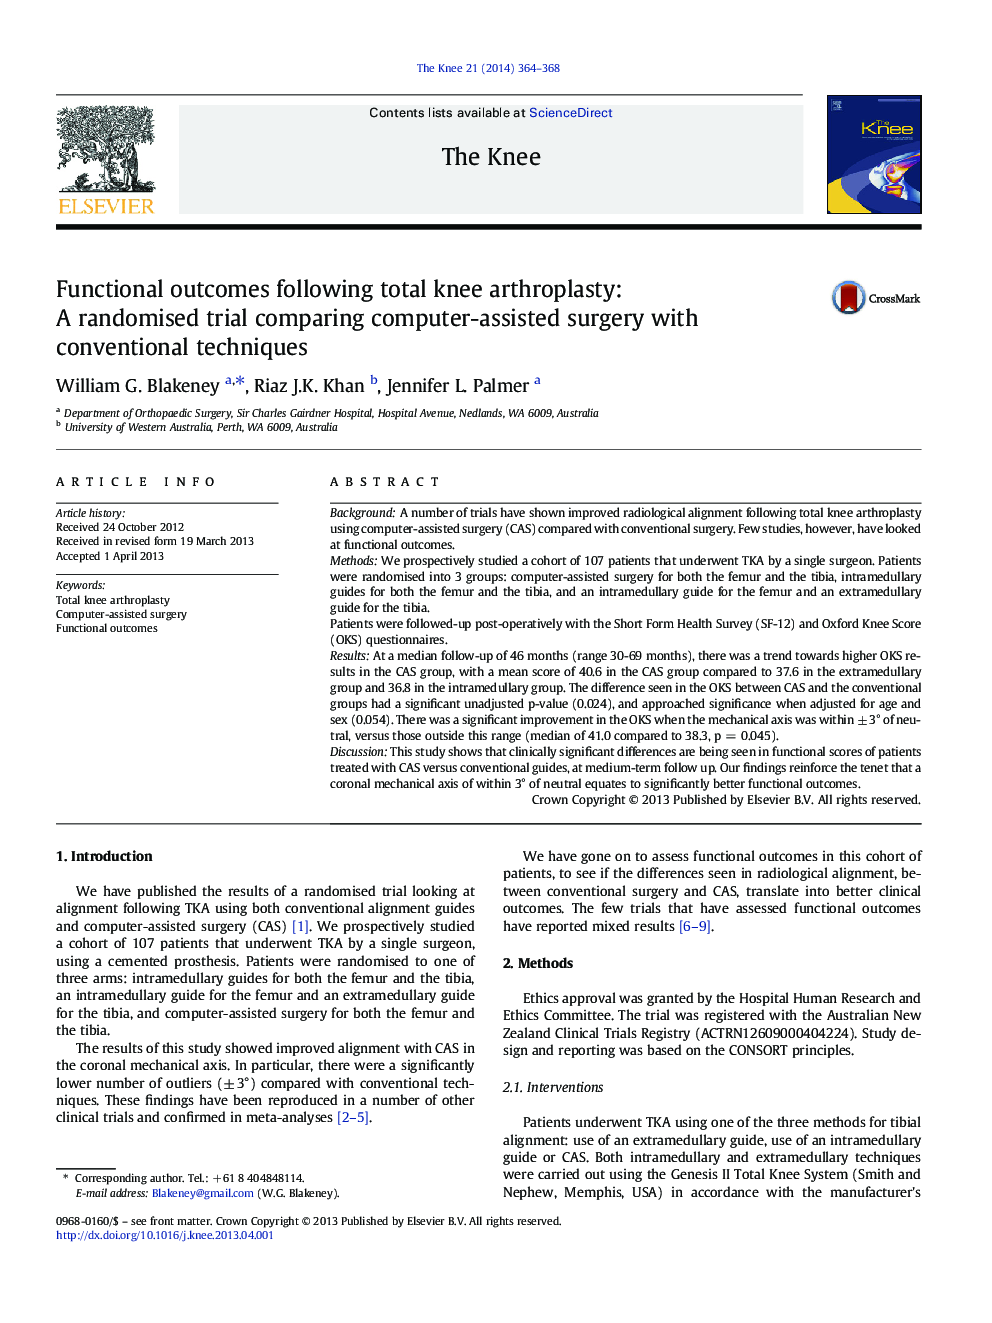 نتایج عملکردی زیر کل آرتروپلاستی زانو: یک کارآزمایی تصادفی با مقایسه عمل جراحی با استفاده از تکنیک های متعارف 